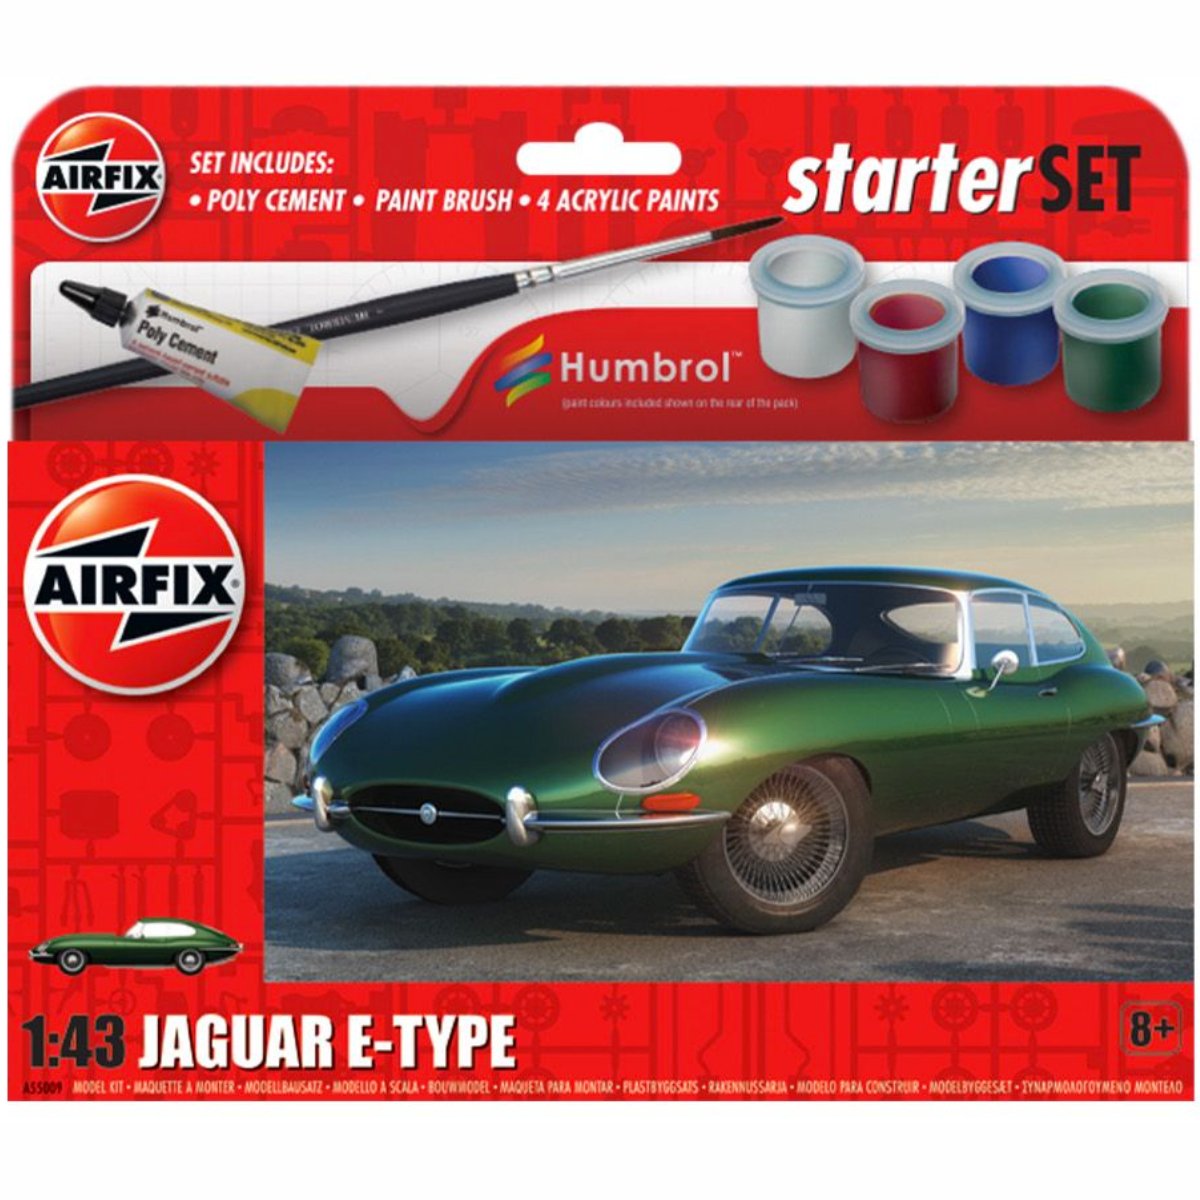 Airfix A55009 Starter Set - Jaguar E-Type 1:43 - Phillips Hobbies